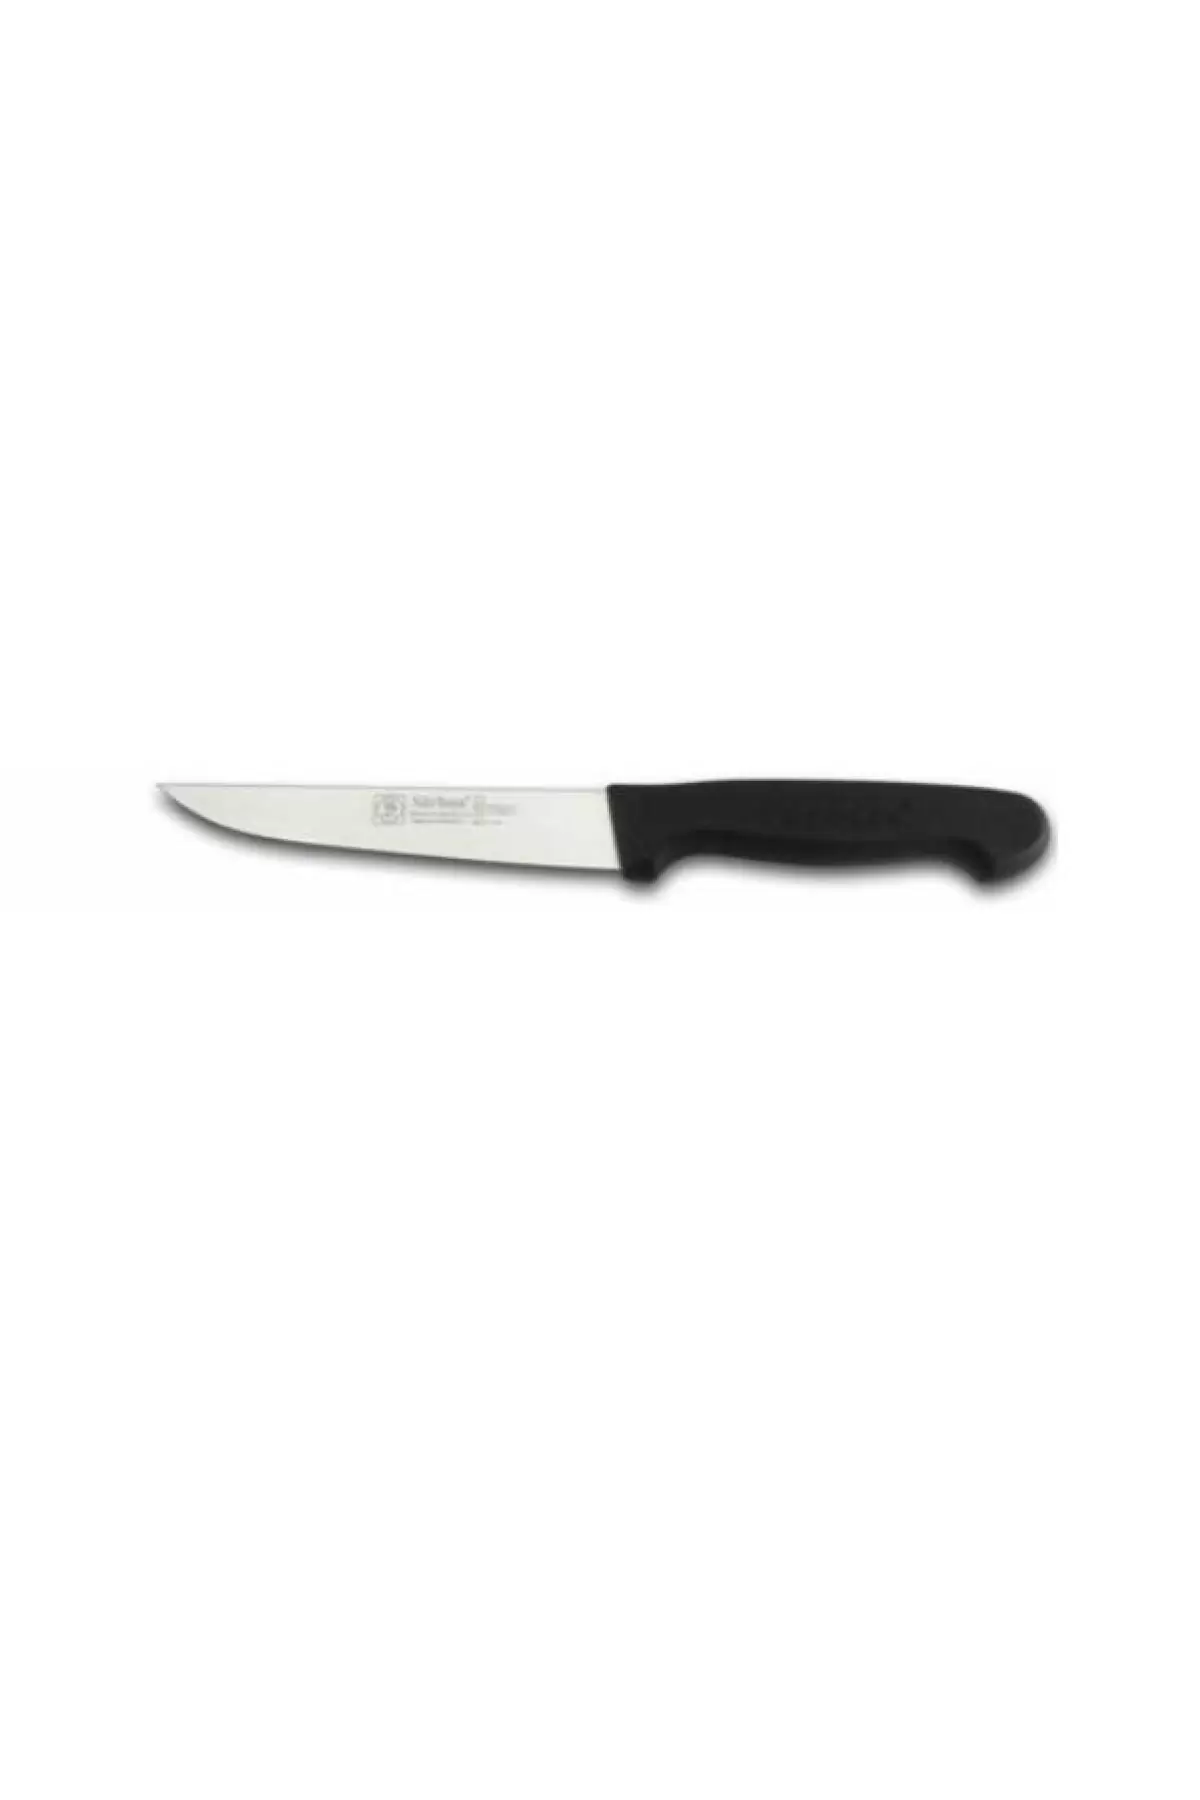 Sürbisa 61005 Mutfak Bıçağı 12.5 Cm